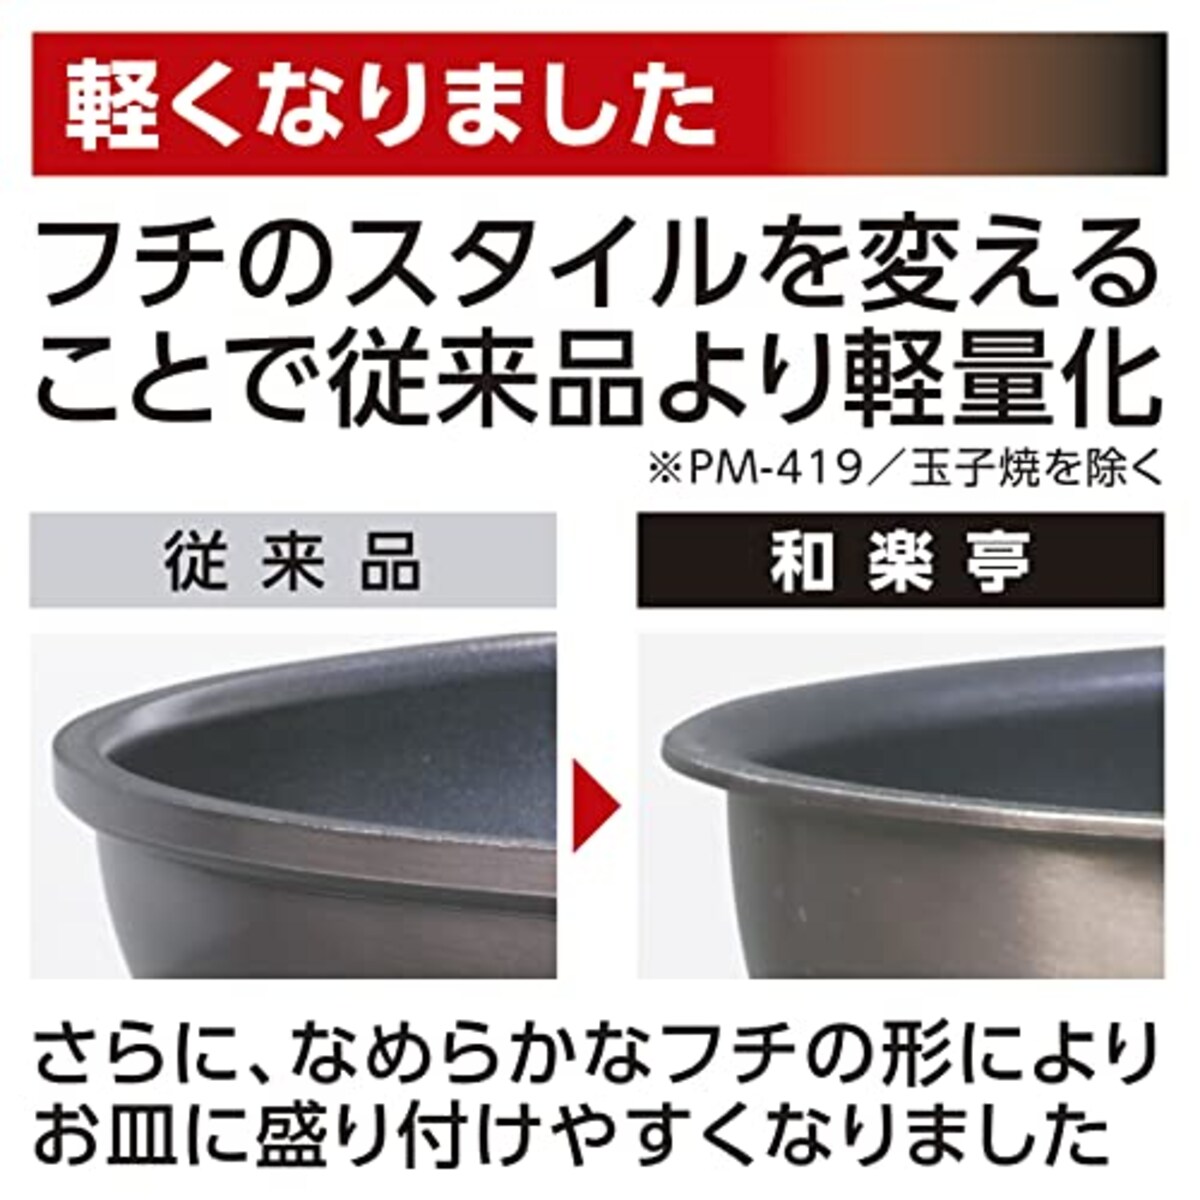  竹原製缶 和楽亭 IH深型フライパン 24cm 日本製 ブラウン画像8 